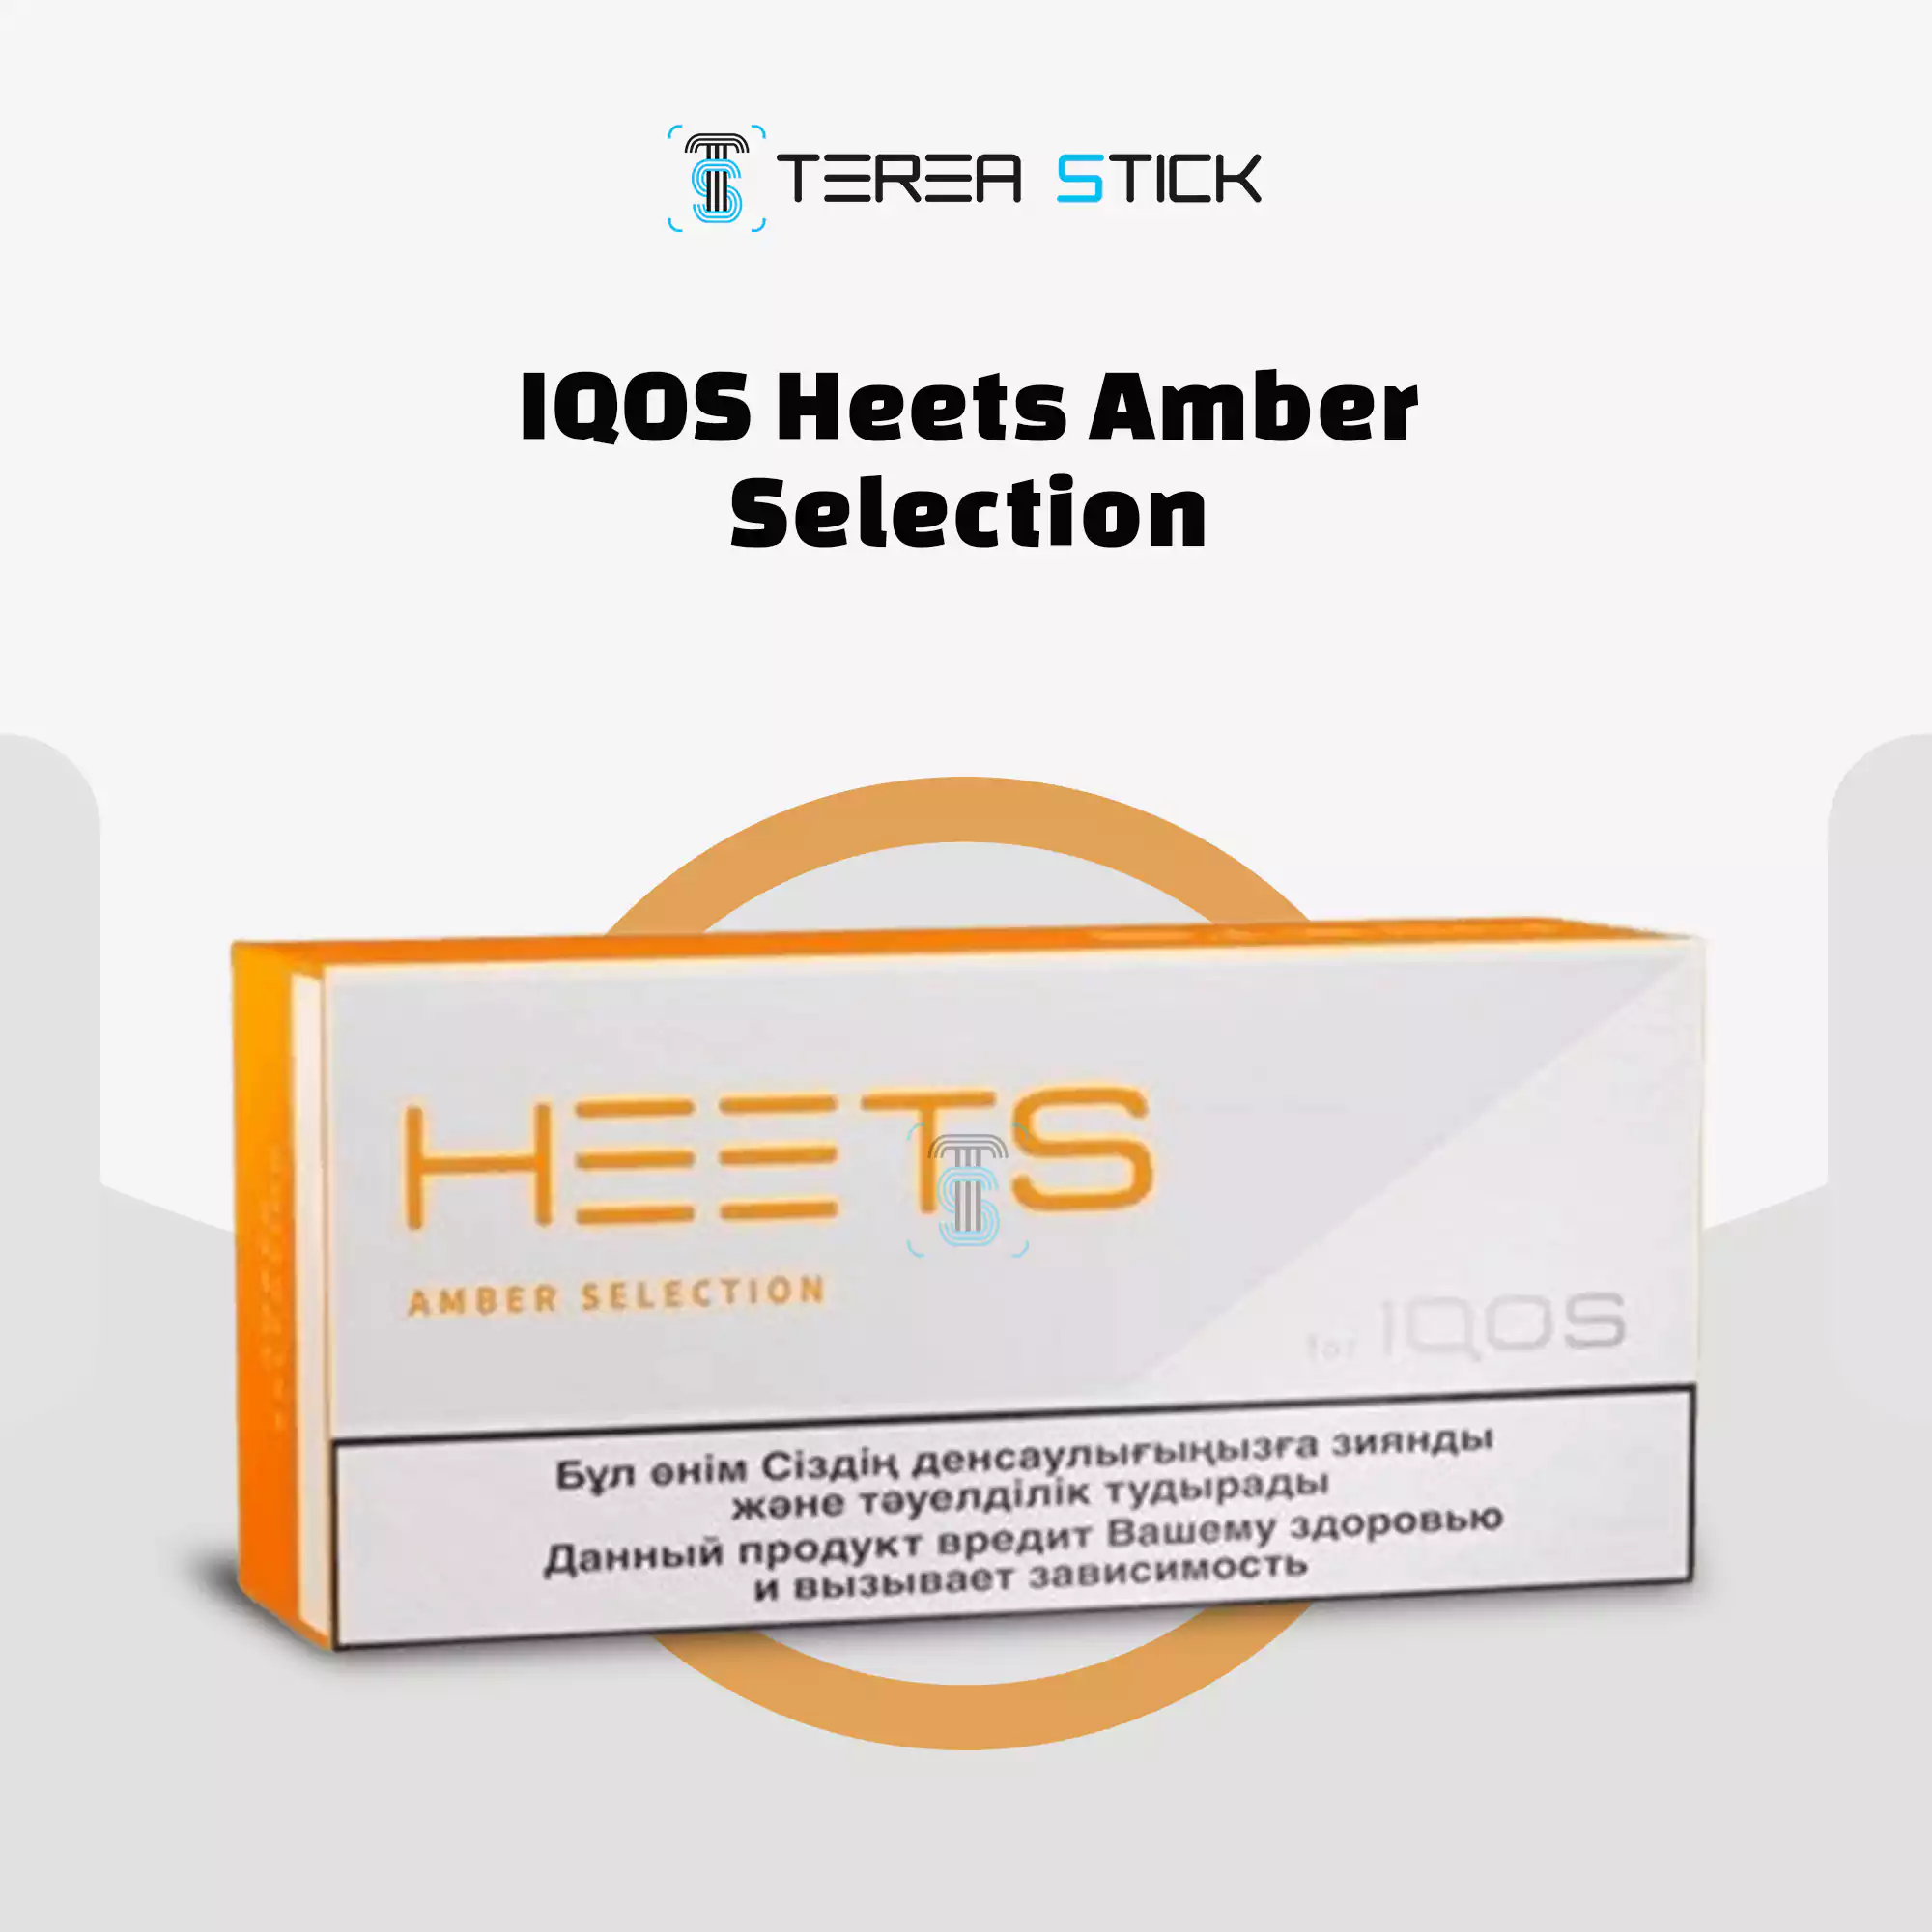 IQOS HEETS Amber Selection UAE